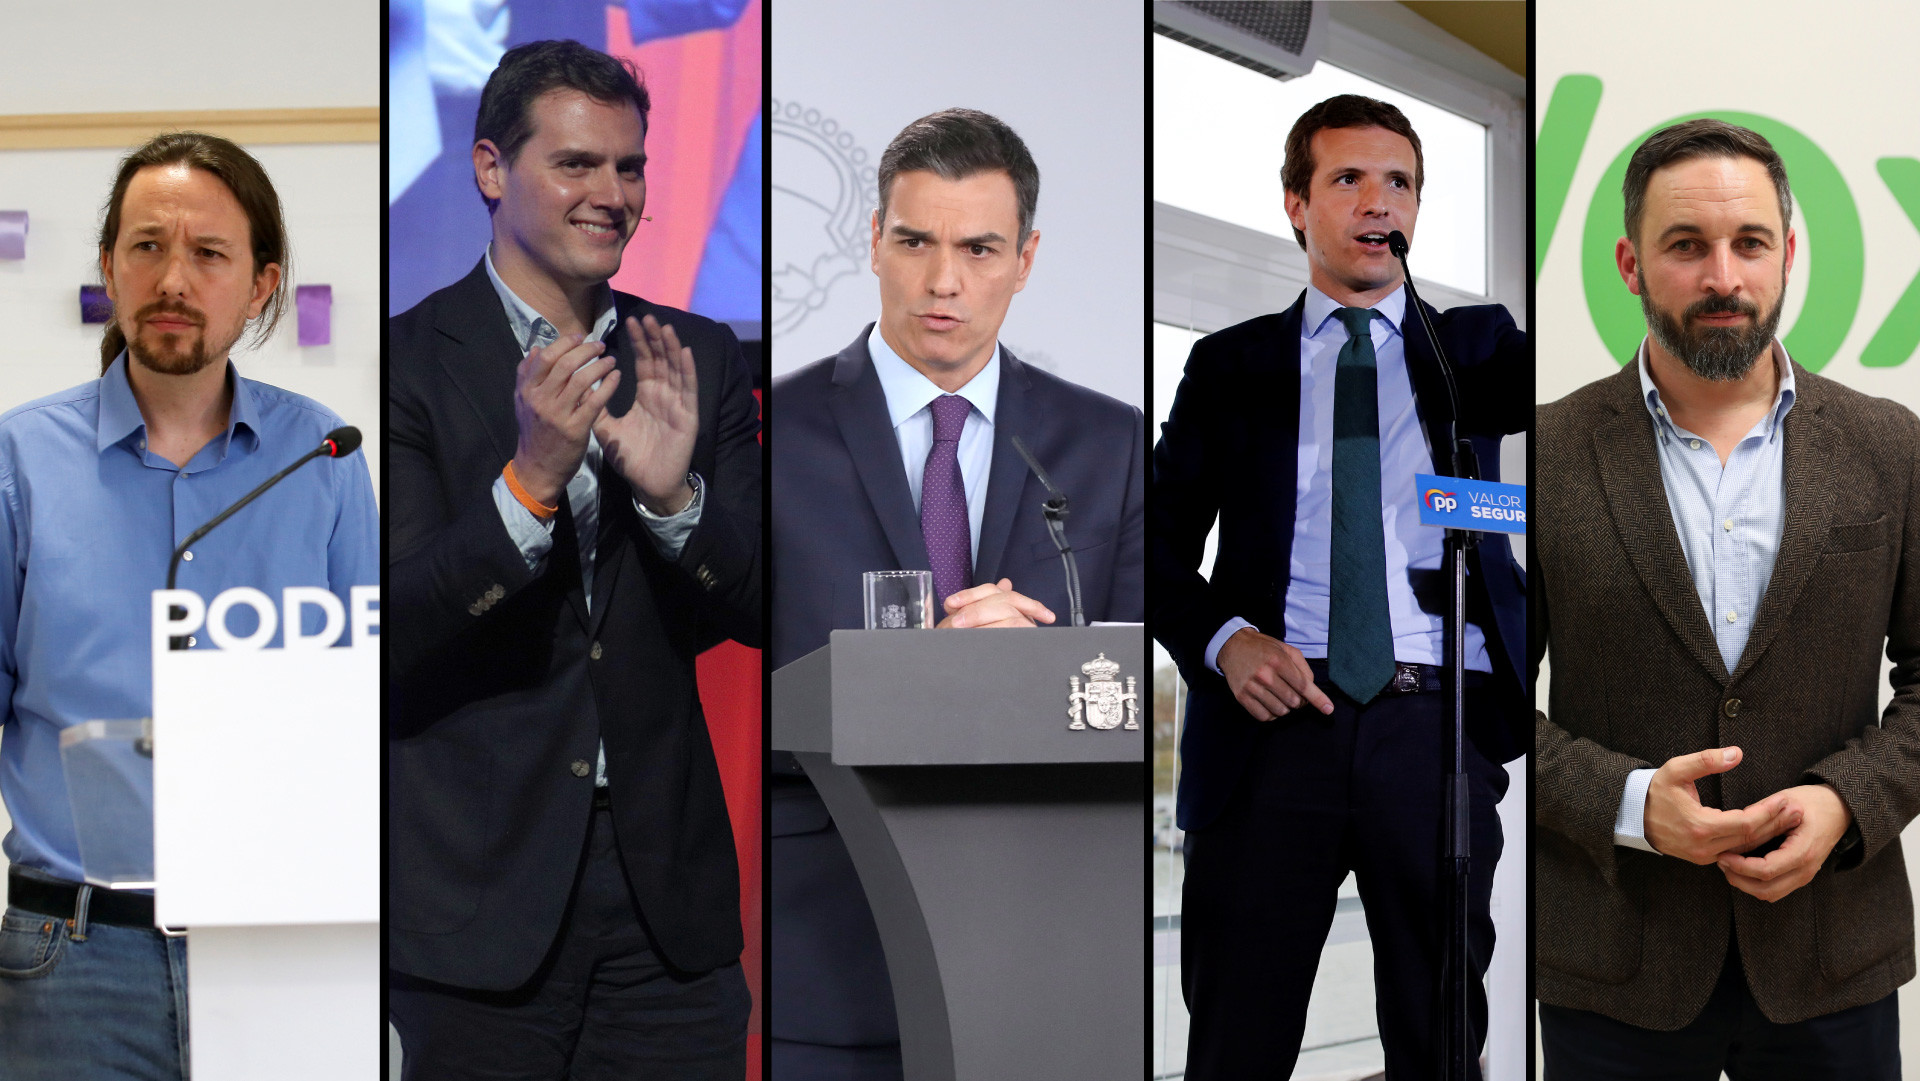 De la extrema derecha a la izquierda: España celebra las elecciones más fragmentadas de su historia